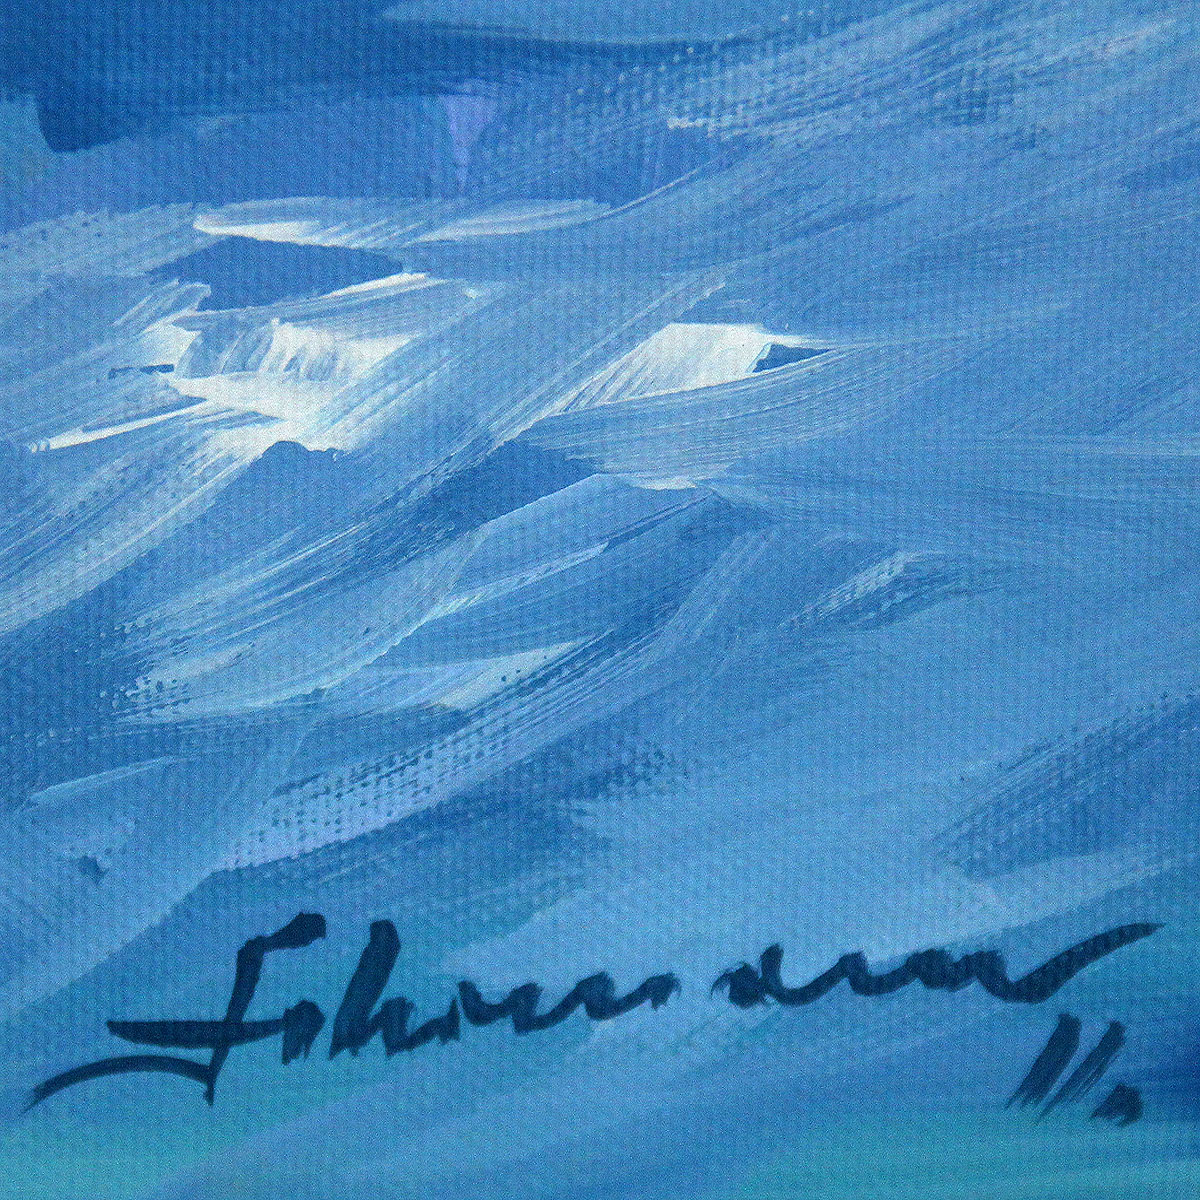 Zeitgenössische Malerei von Uwe Fehrmann: "Wolken II" (A)